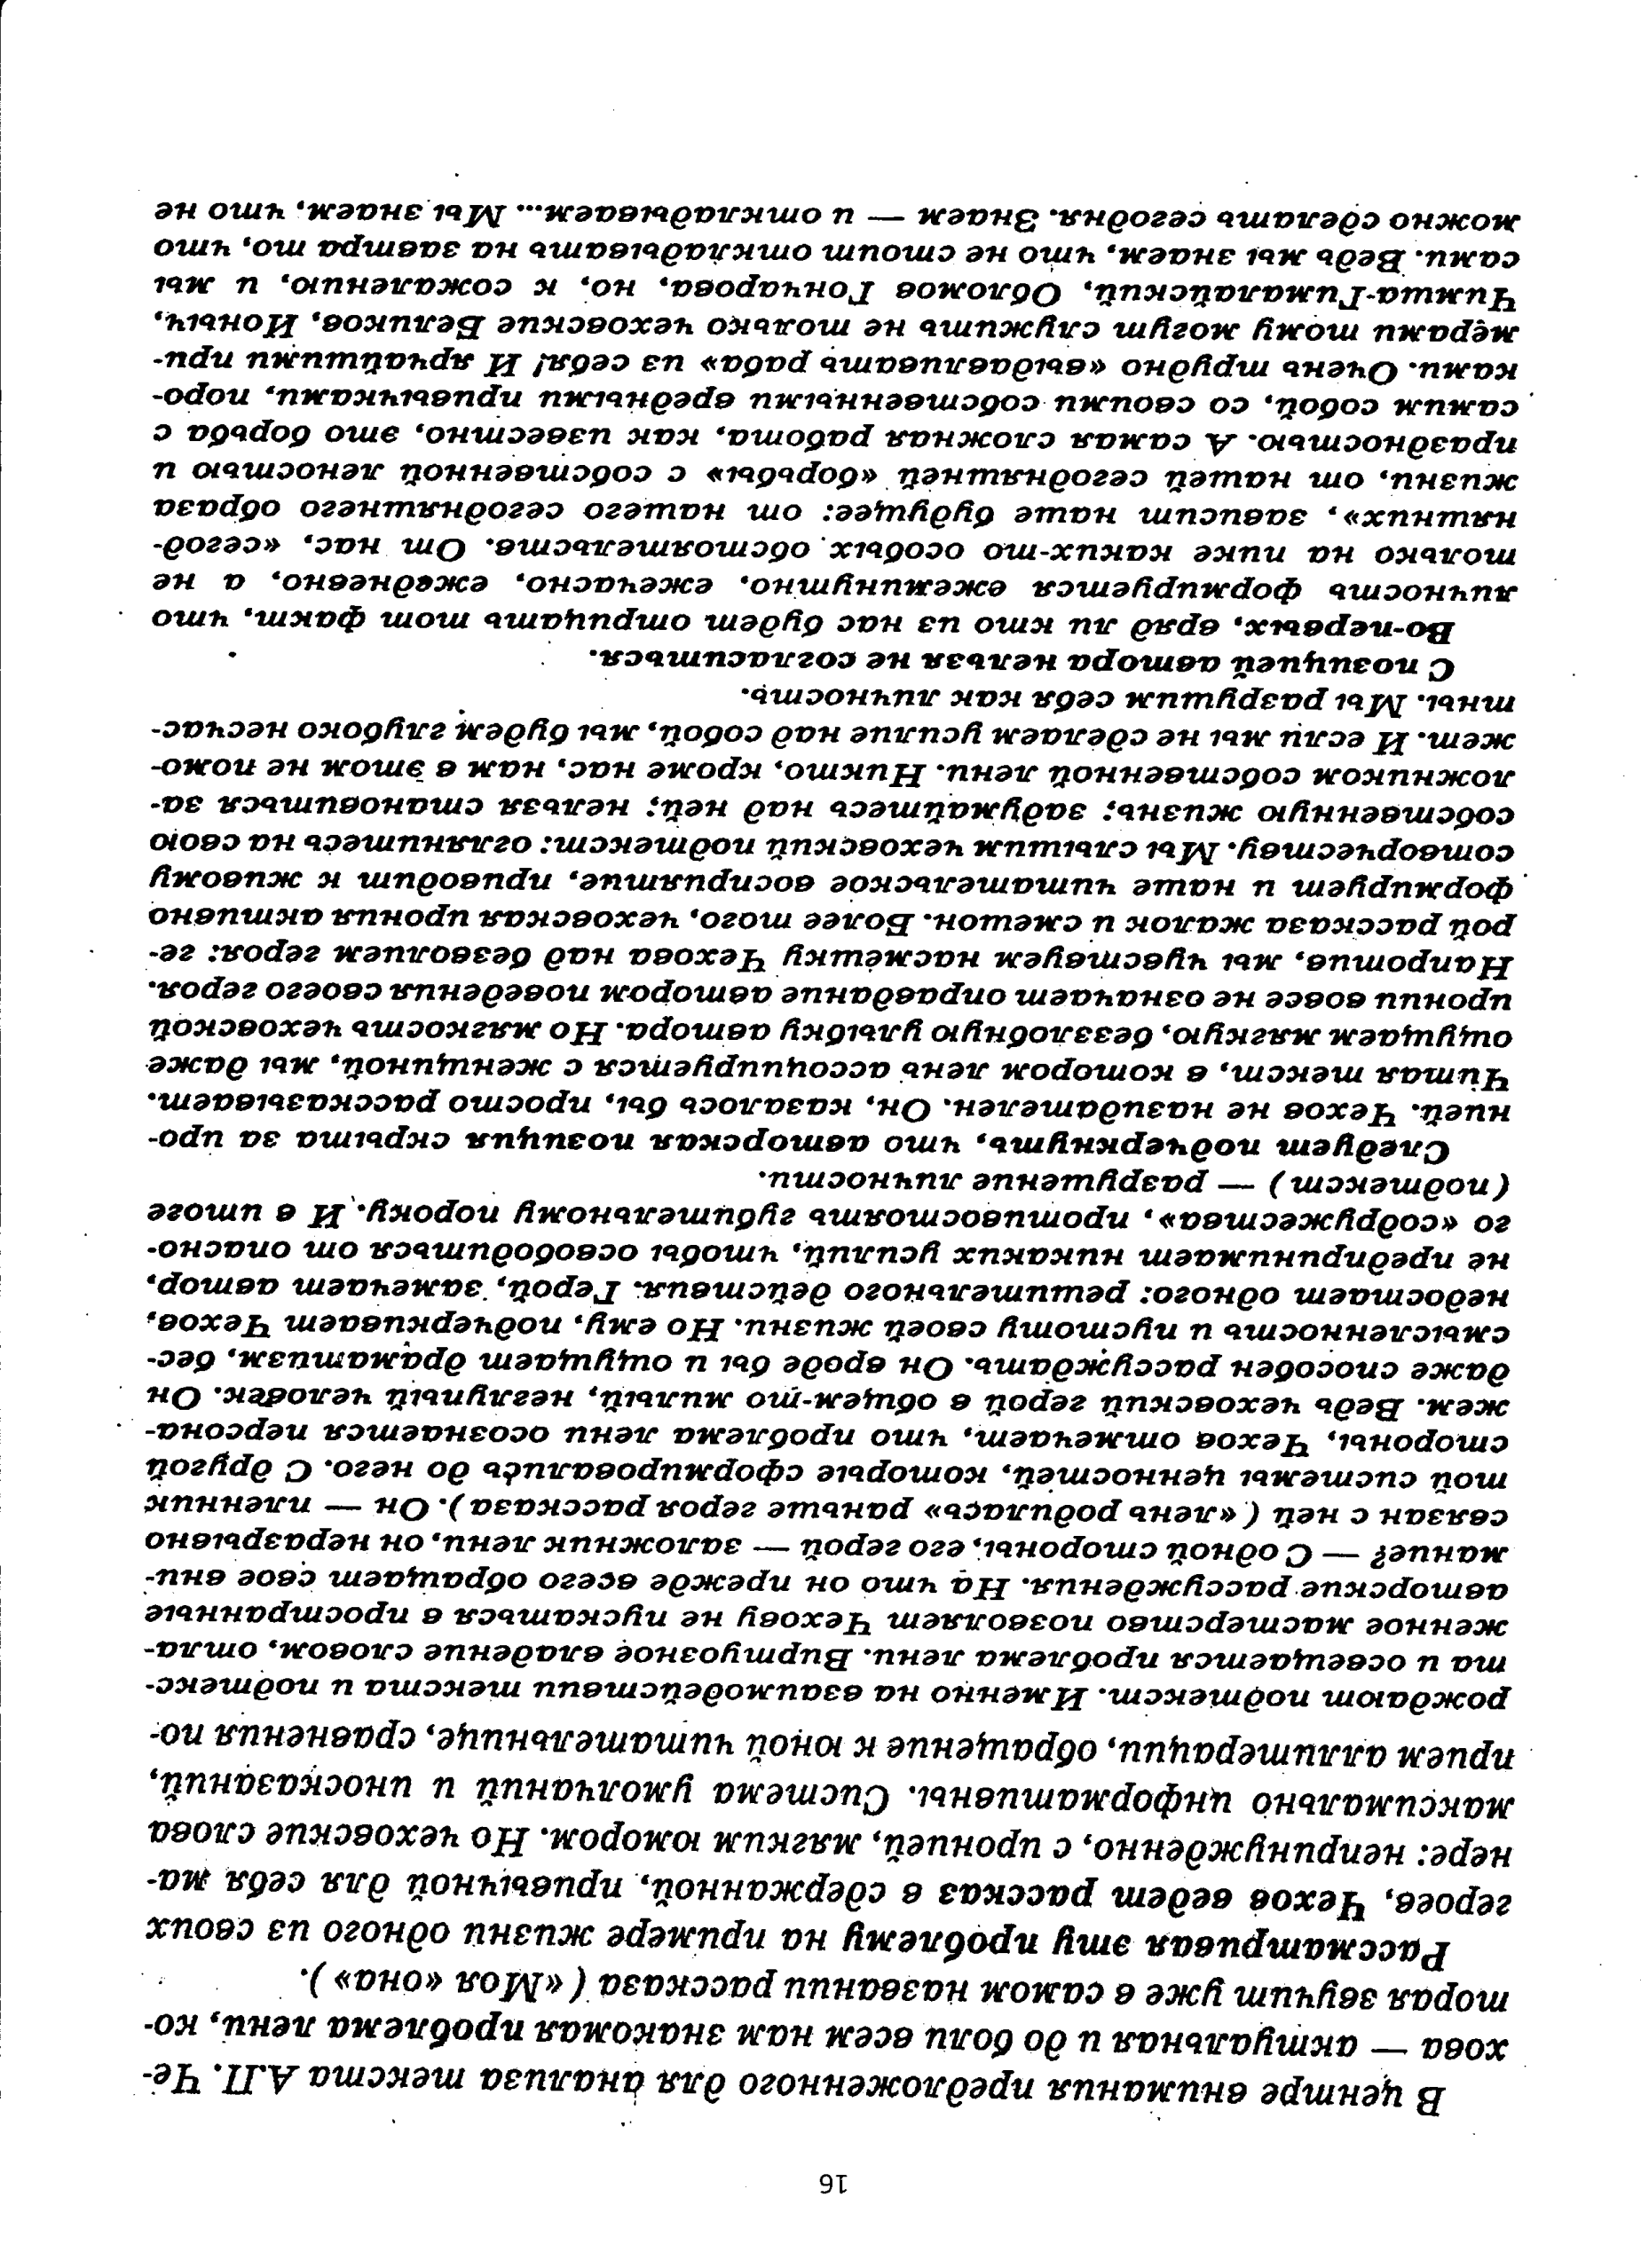 Выполнение задания 25 на ЕГЭ по русскому языку